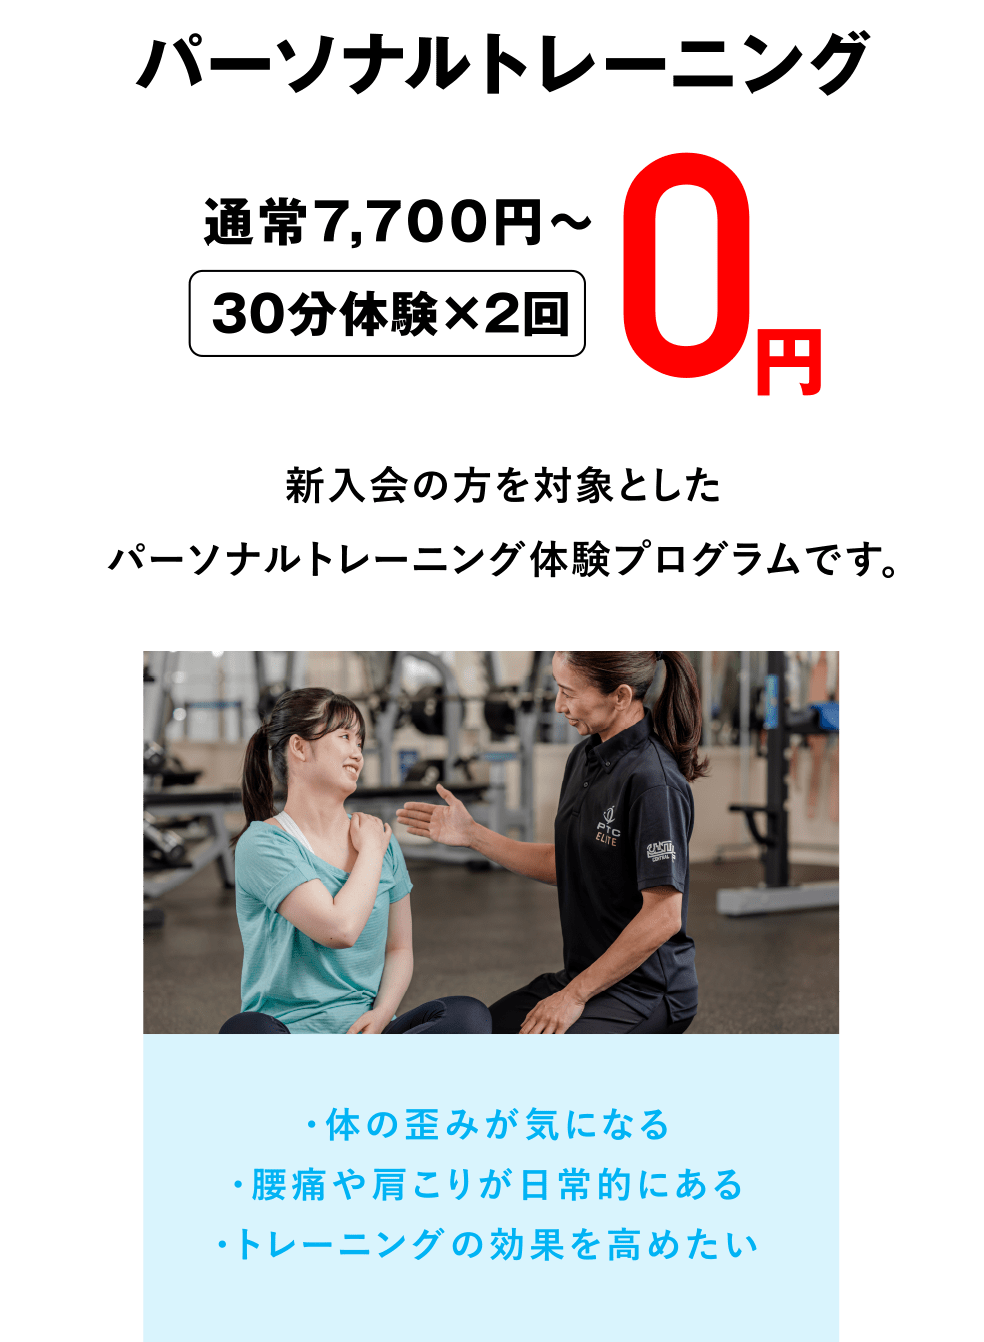 パーソナルトレーニング（30分体験×2回）通常7,700円〜が0円